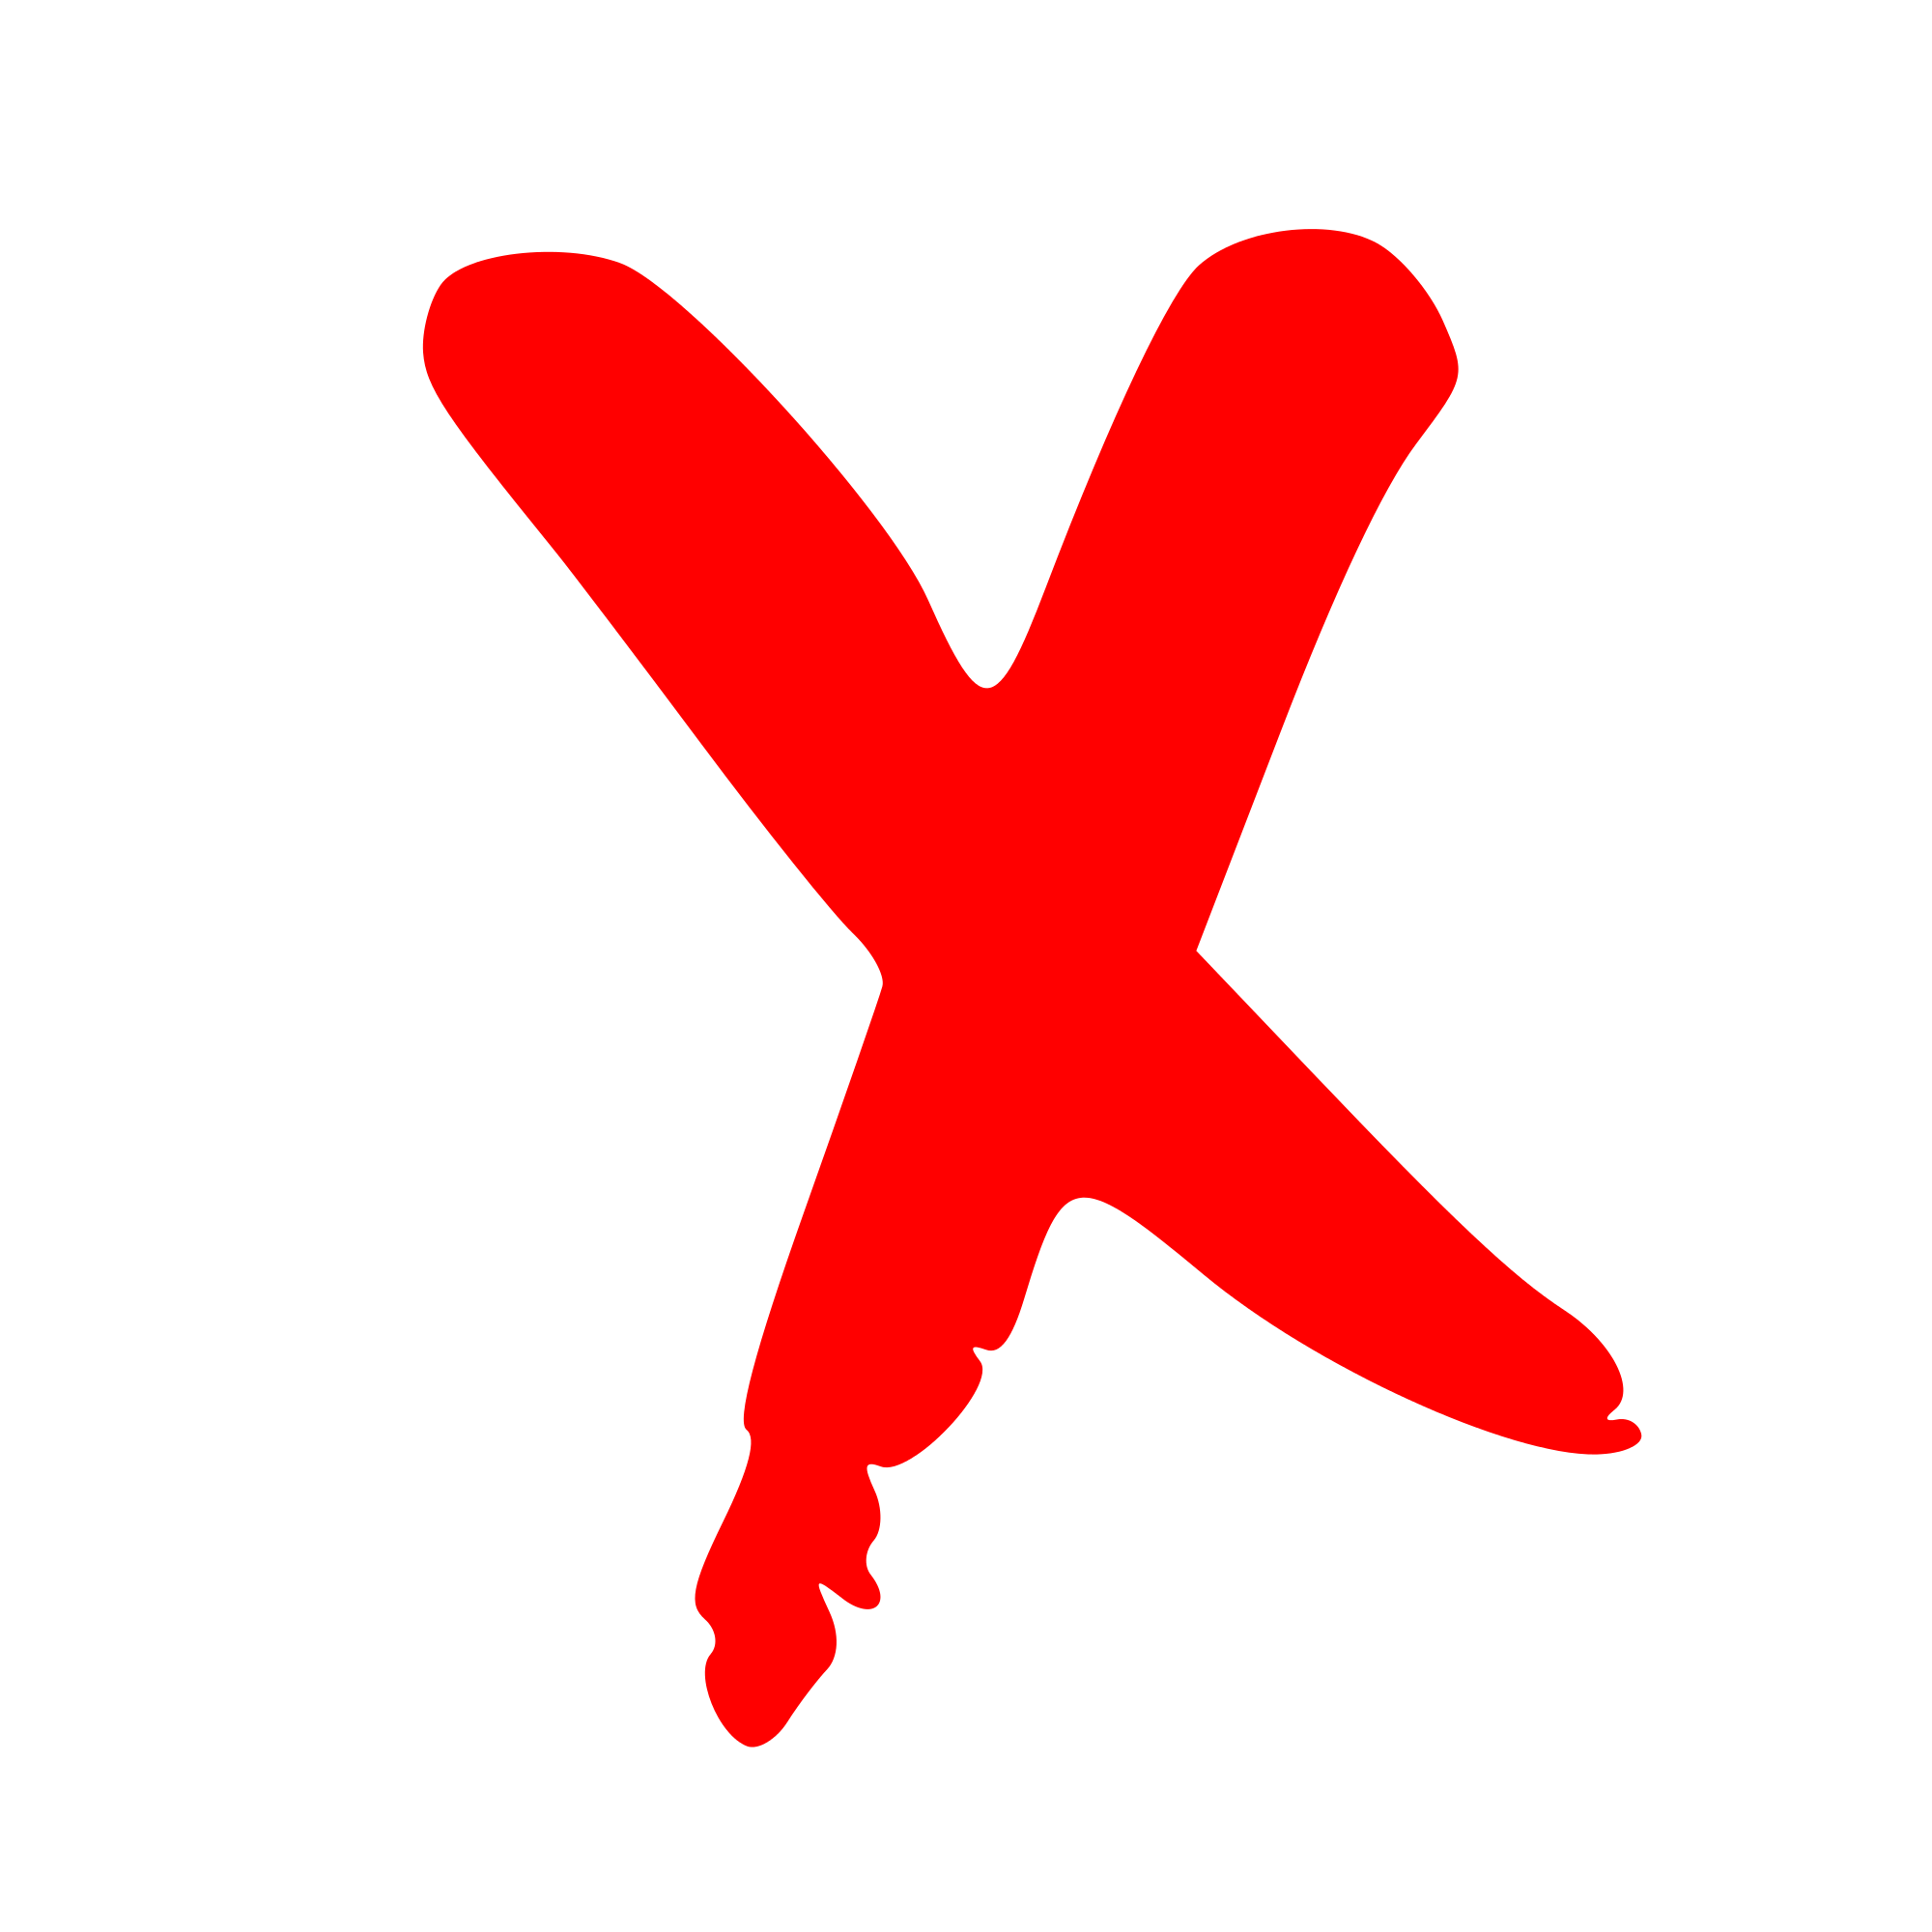 Image x icon. Красный крестик. Крестик значок. Красный крестик на белом фоне. Красный Икс.